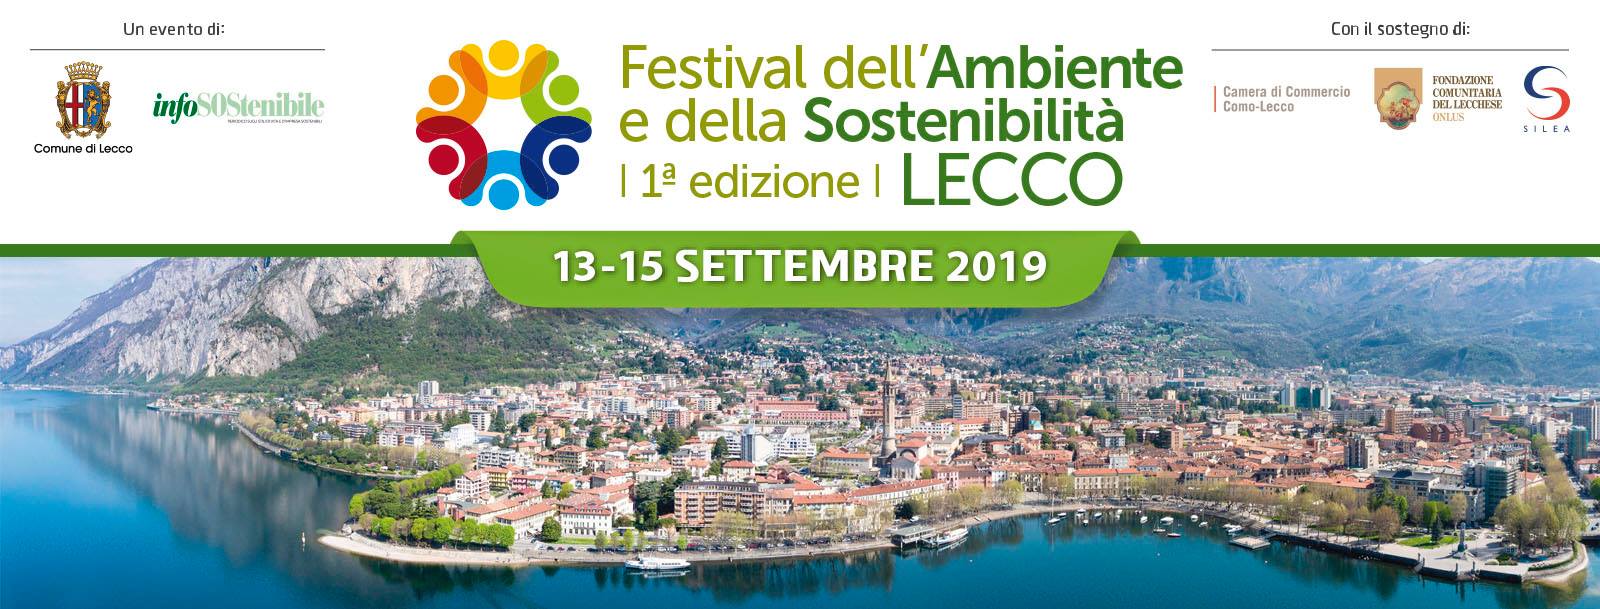 13 - 14 - 15 settembre 2019 1° Festival della SOStenibilità della città di Lecco Birre artigianali alla spina di Herba Monstrum Brewery.